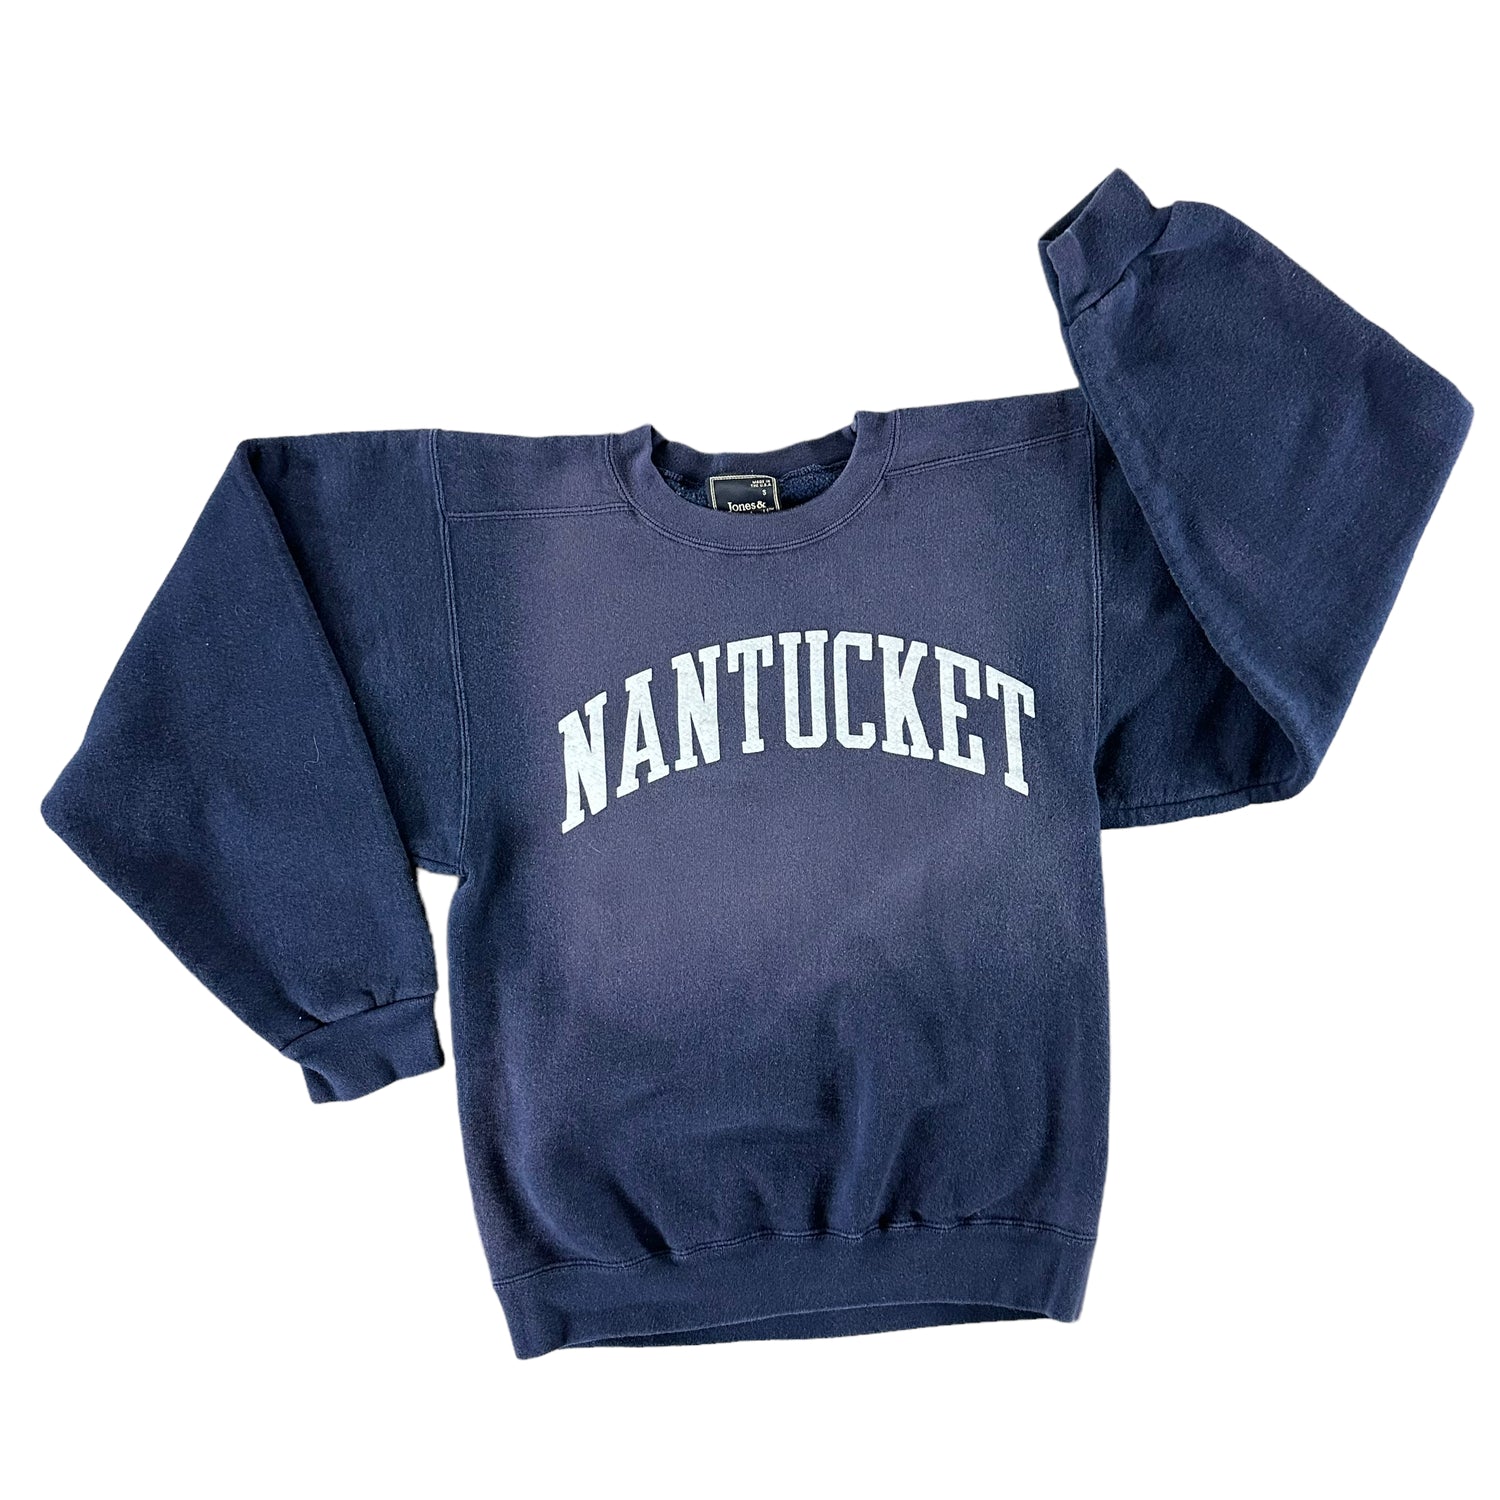 Vintage 1990s Nantucket Sweatshirt size Small